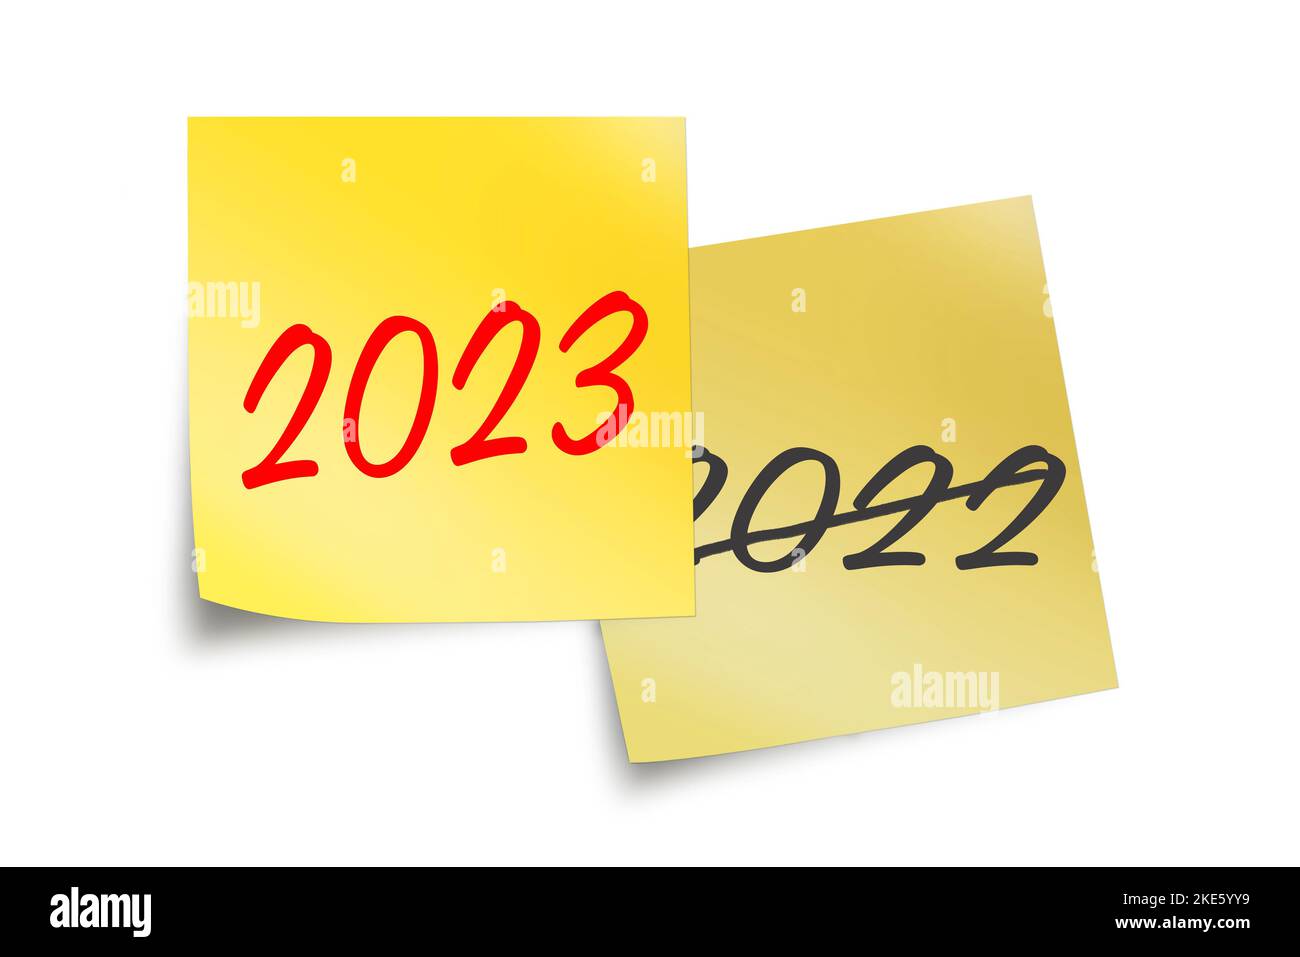 2023 e 2022 scritti su note adesive gialle isolate su illustrazione bianca di un nuovo anno Foto Stock